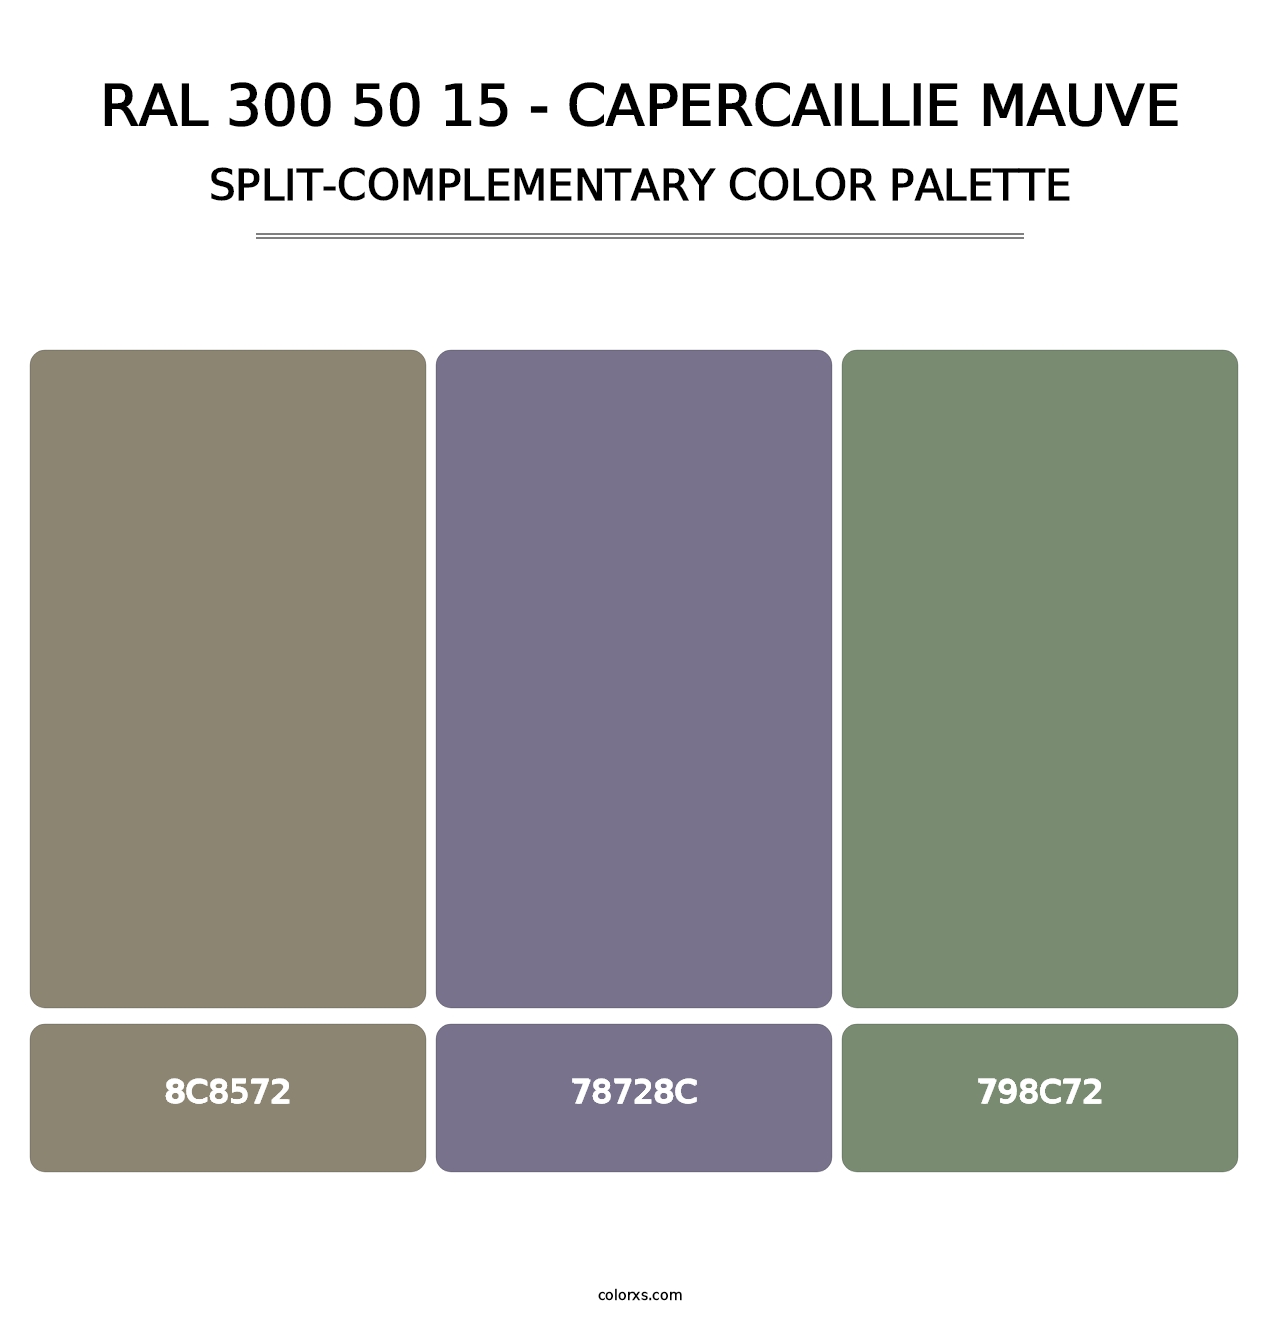 RAL 300 50 15 - Capercaillie Mauve - Split-Complementary Color Palette